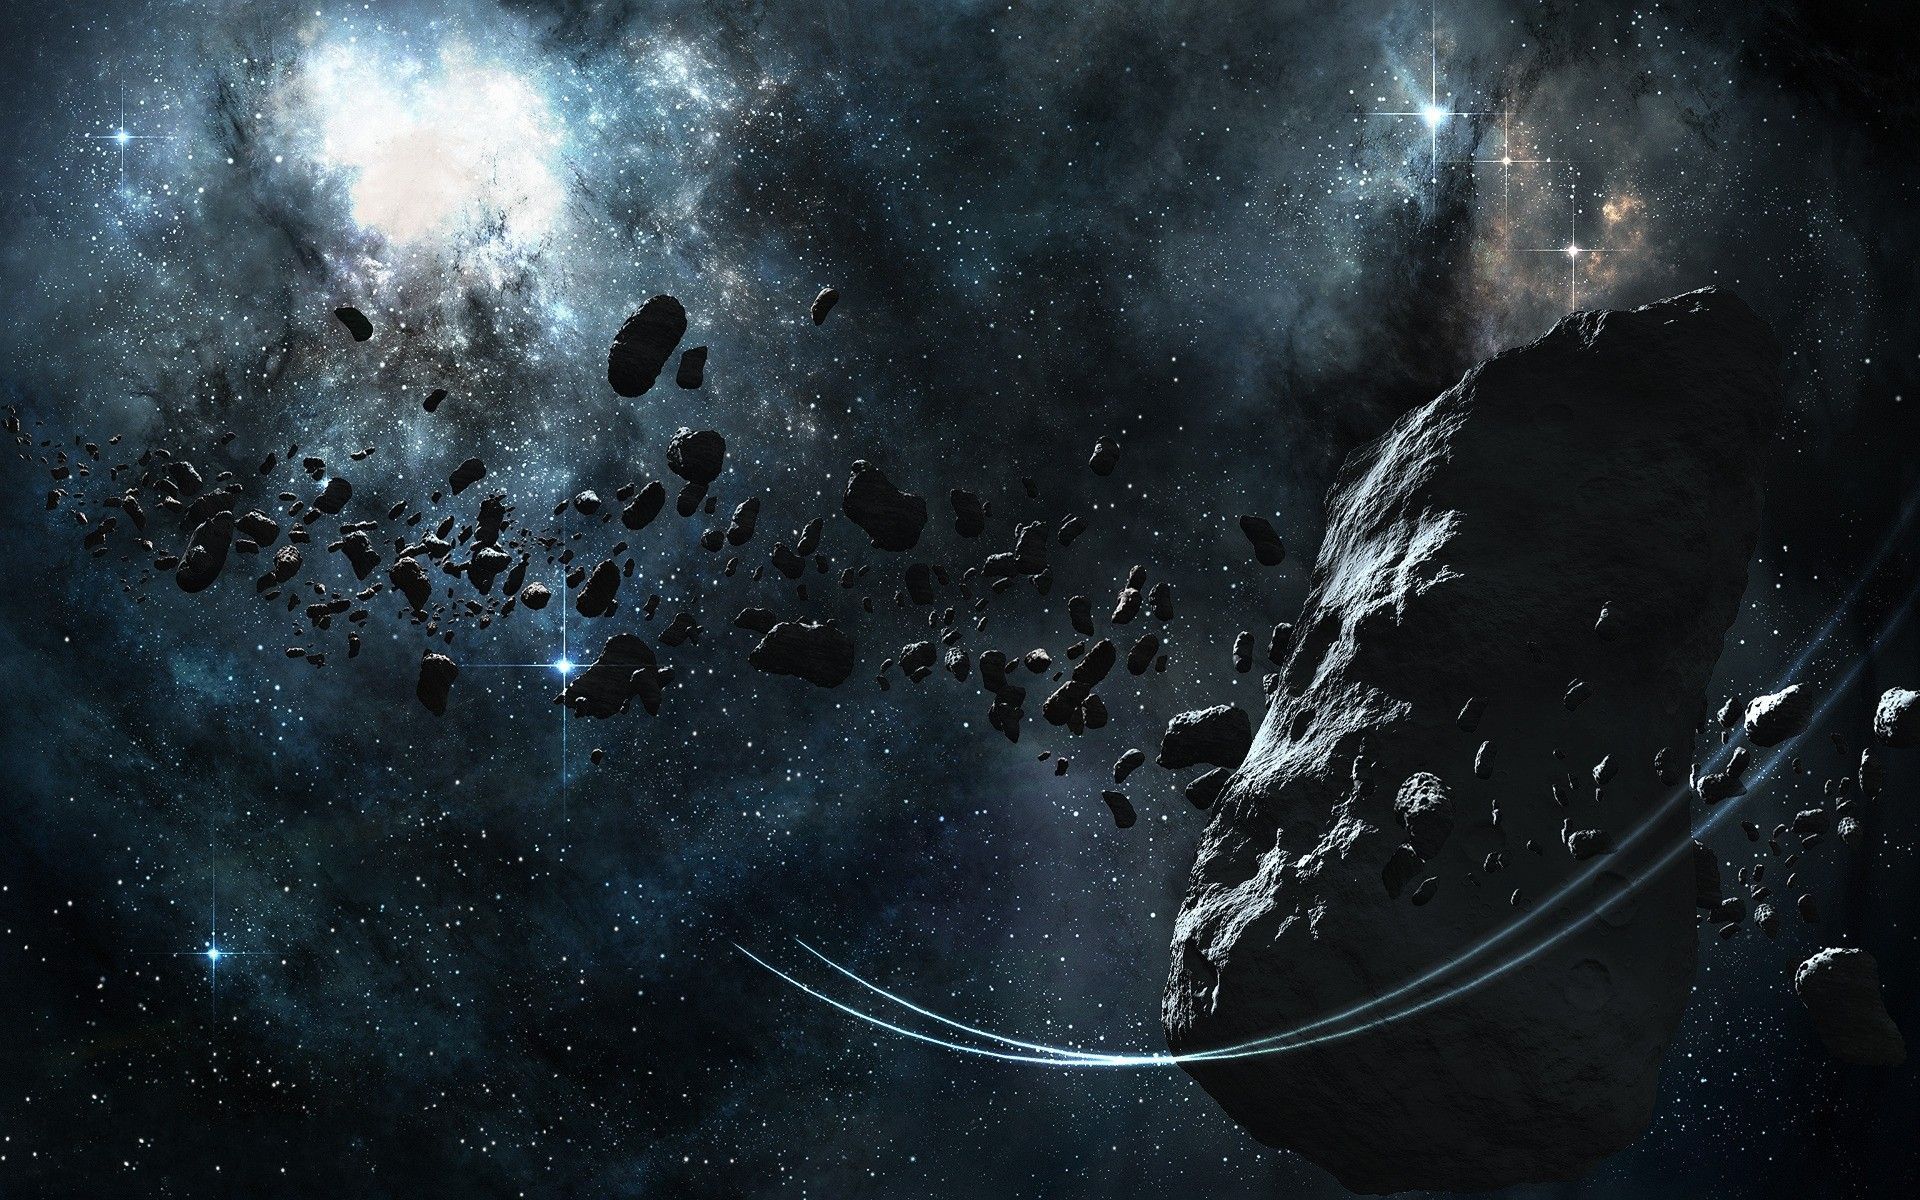 عکس گرافیکی اعجاب برانگیز کمربند سیارکی با وضوح بالا